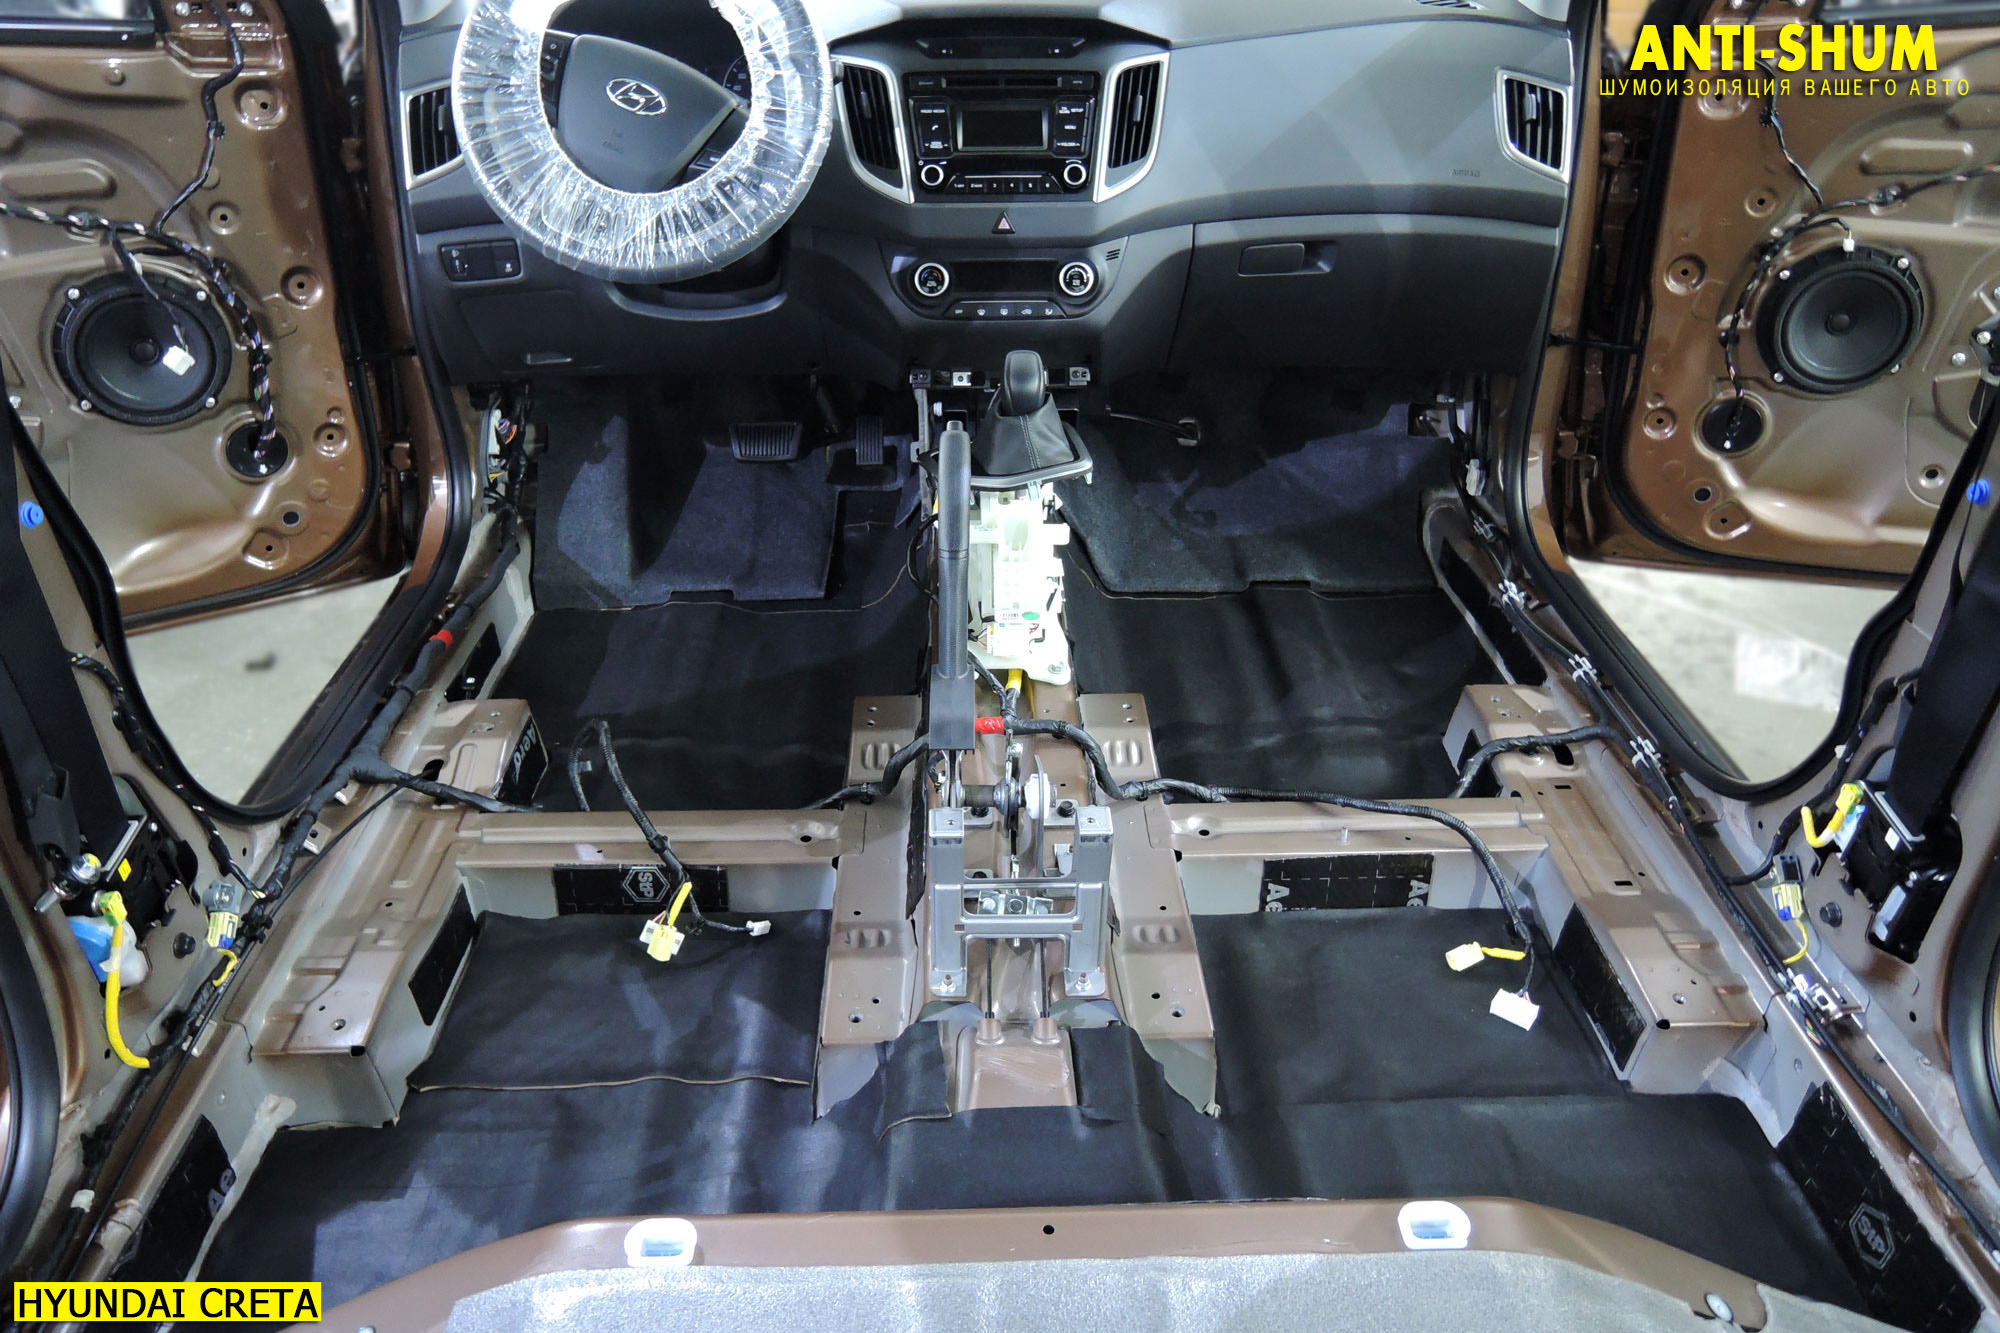 Замки и блокираторы капота, руля, КПП (АКПП) для автомобилей Hyundai CRETA (2021-): установка, отзывы, характеристики